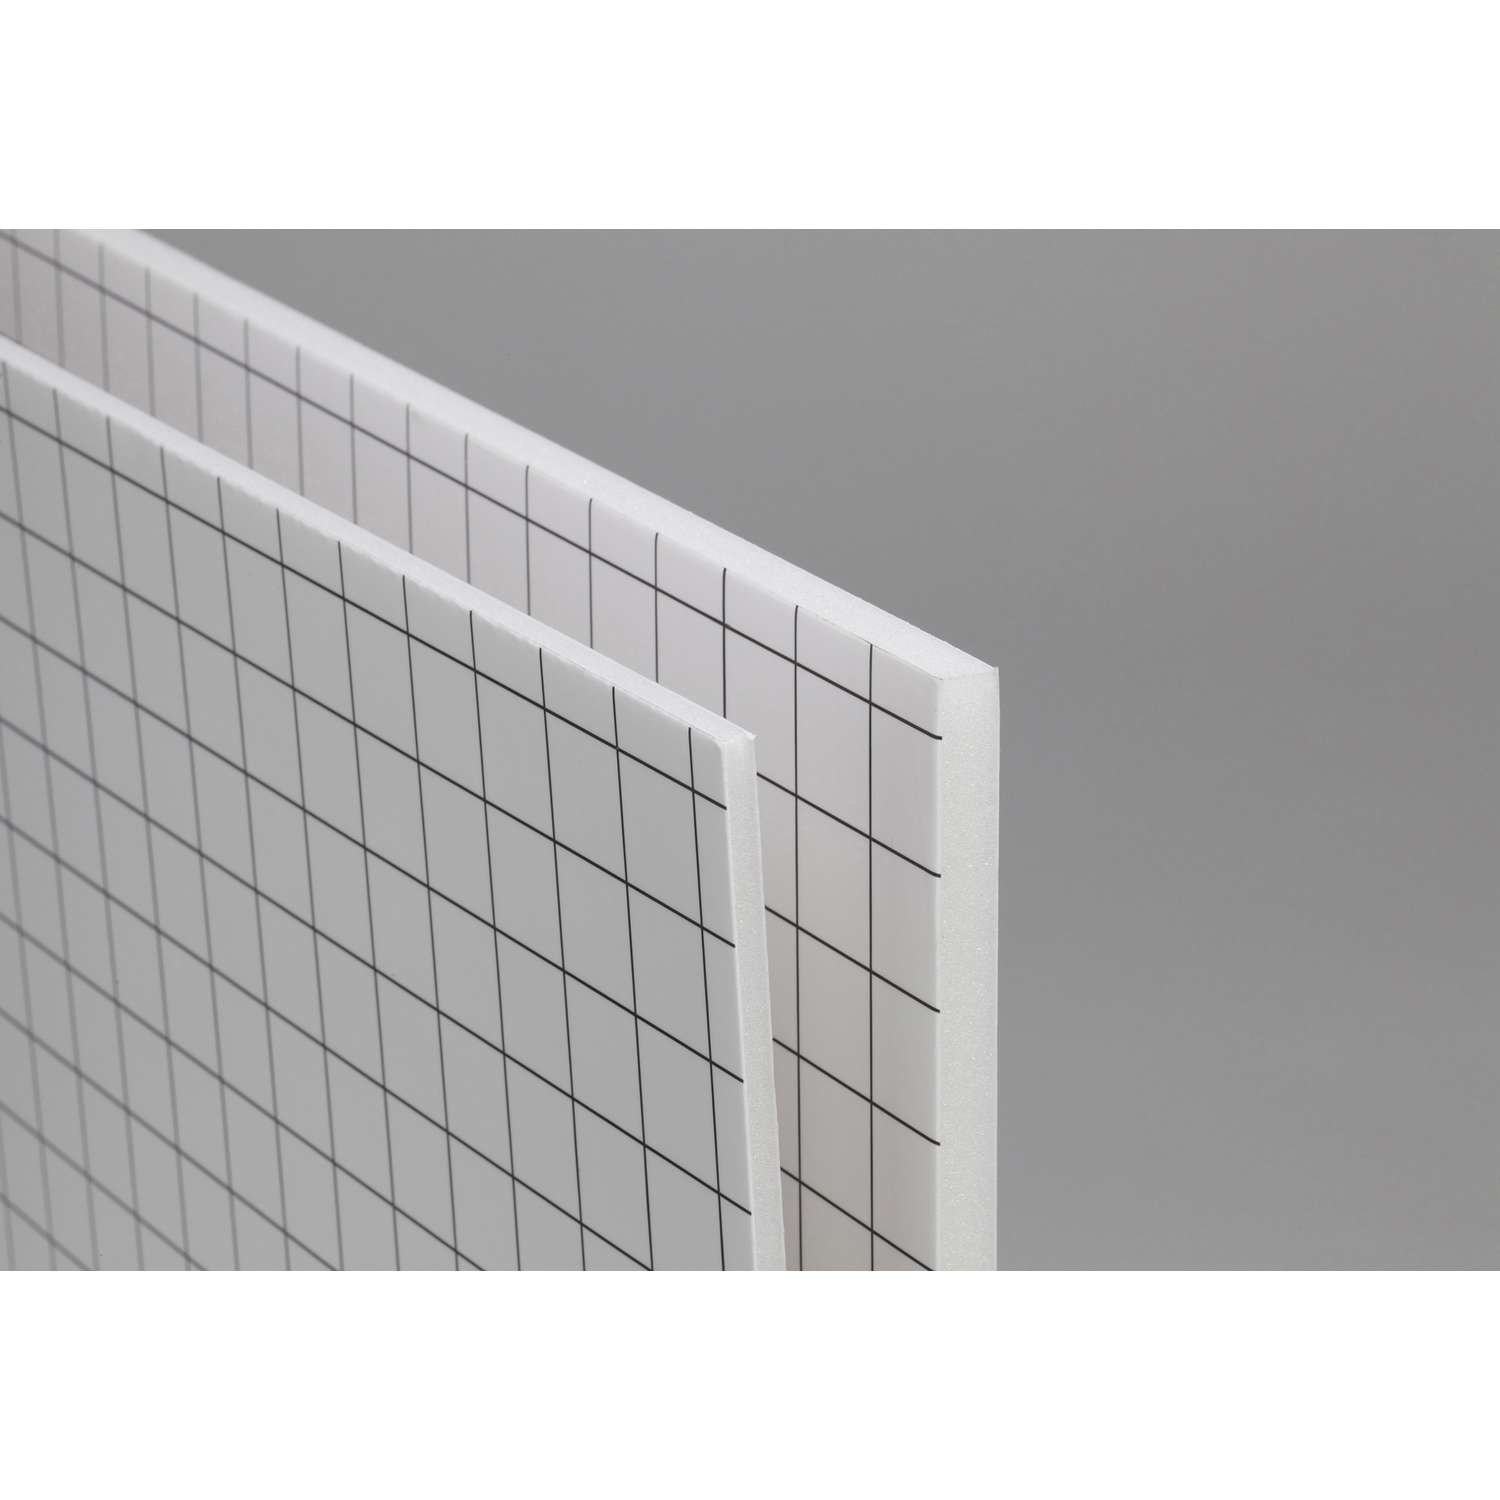 10x Plastic Sheet Styrene weiss  21 x 6 cm Stärke 0,5 mm  für Modellbau Basteln 